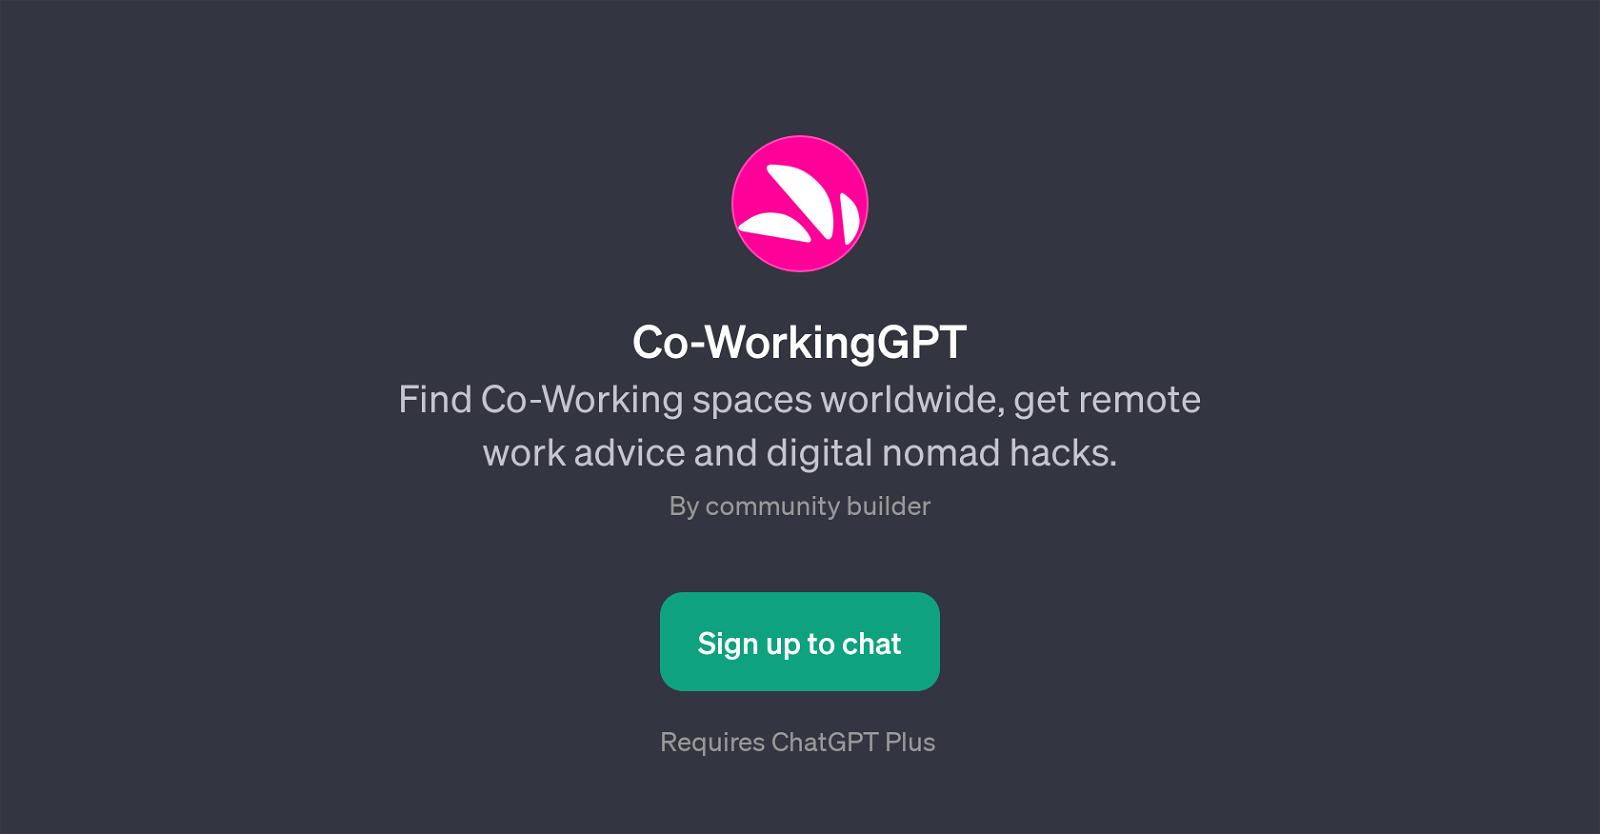 Co-WorkingGPT website